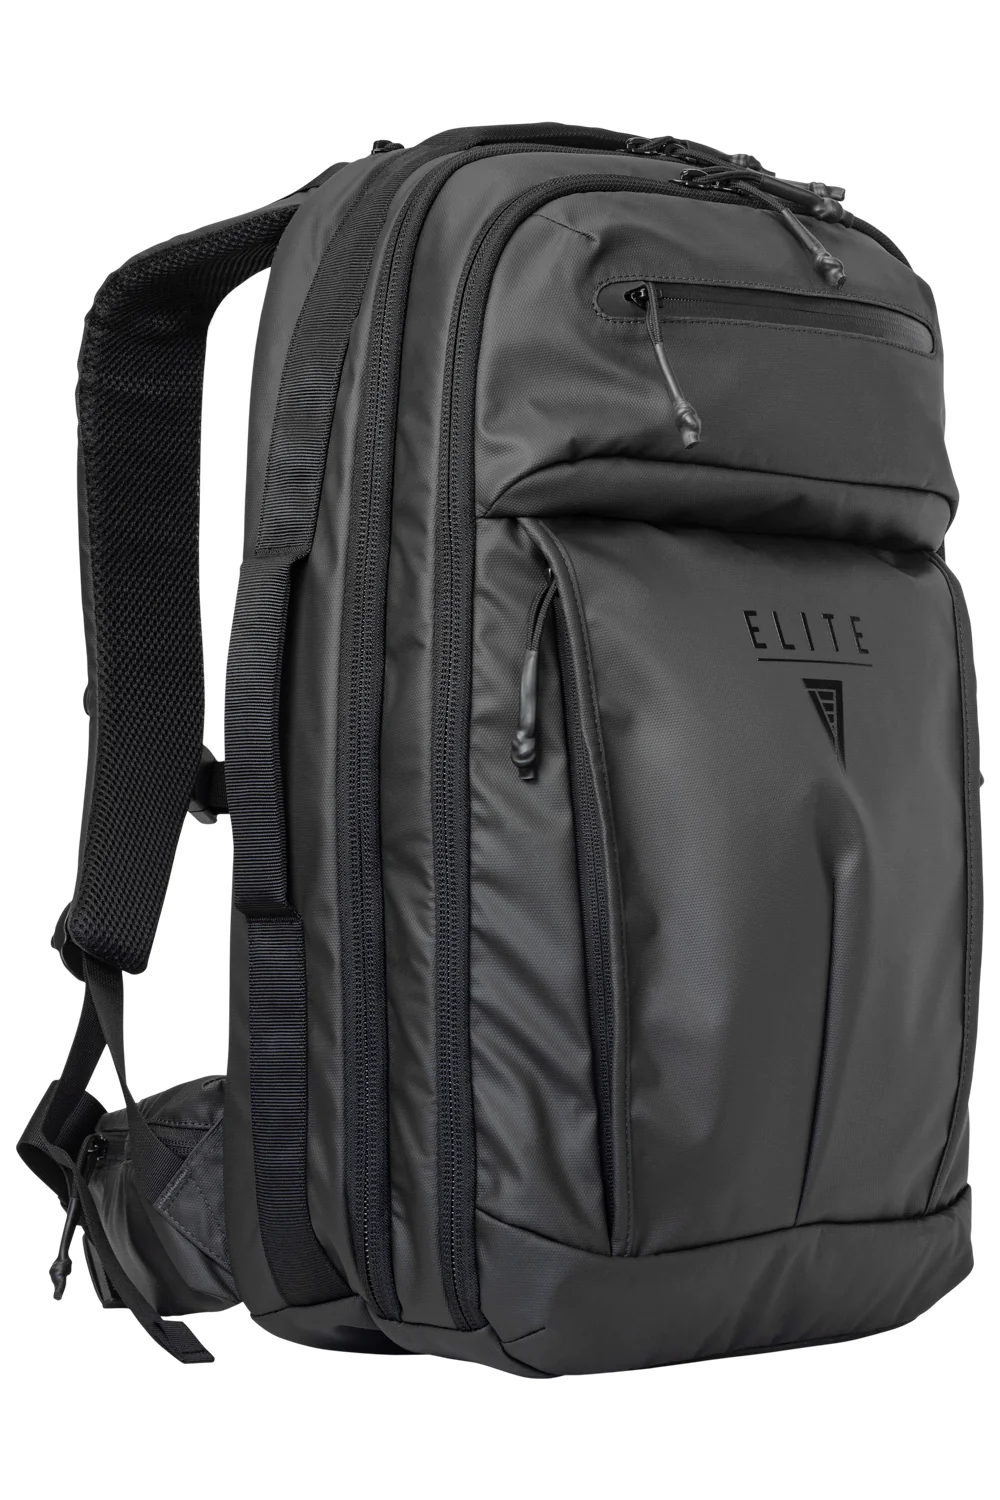 SBR Rifle Backpack | Discreet Rifle Case Backpack